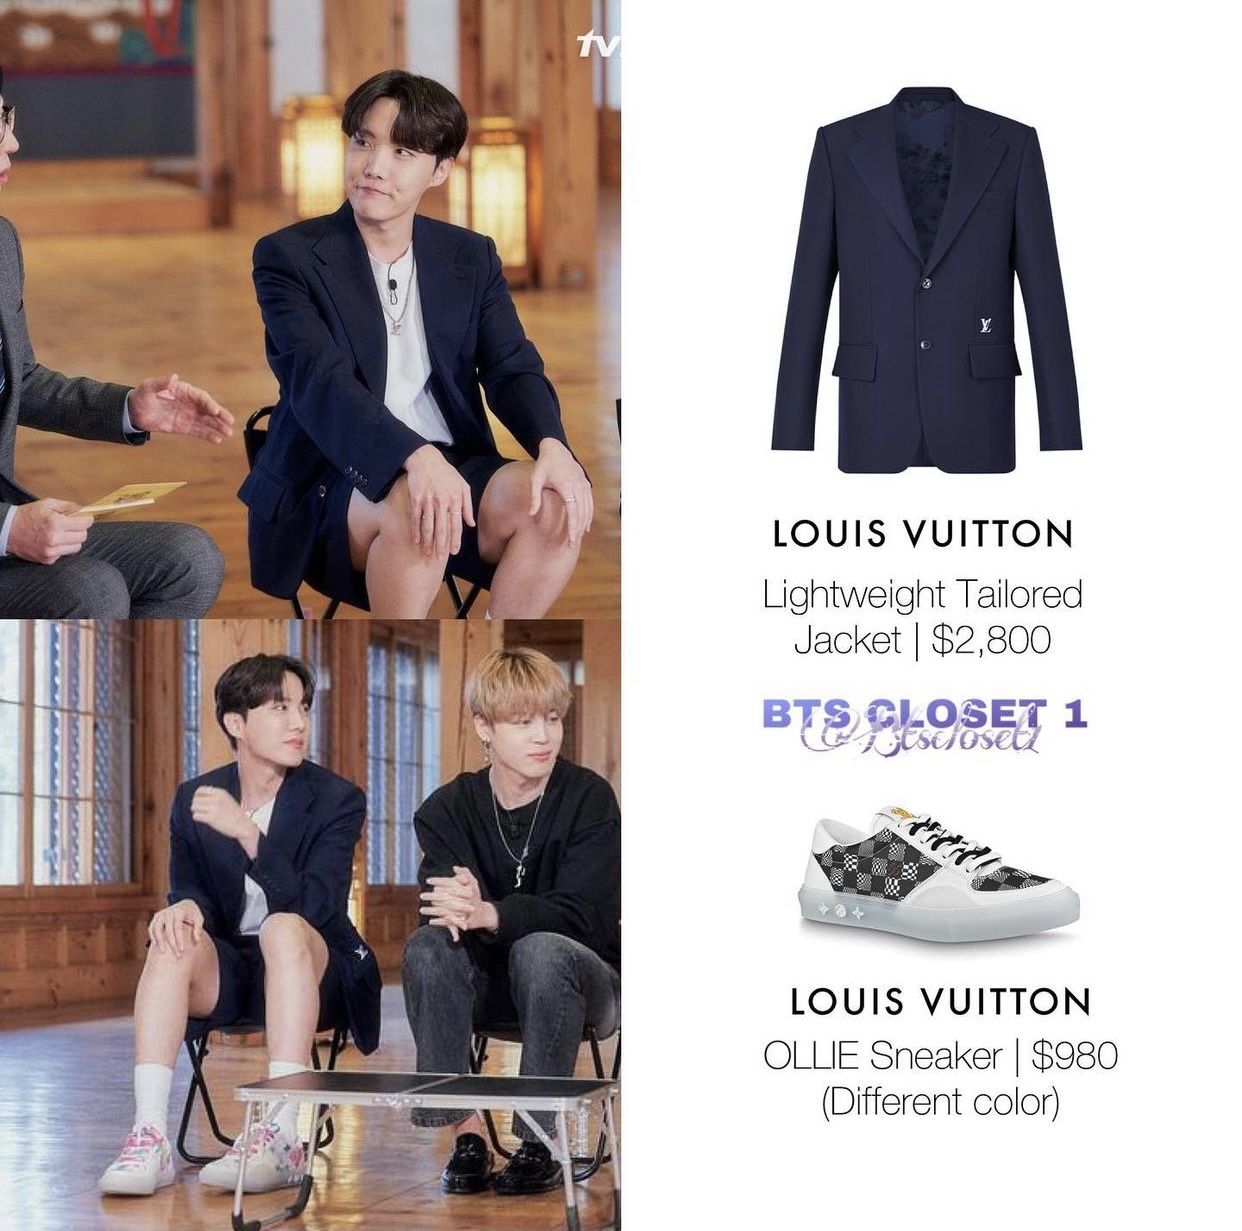 BTS Desain Koper Spesial untuk Ultah ke-200 Louis Vuitton, Hasil  Penjualannya Bakal Didonasikan - Lifestyle